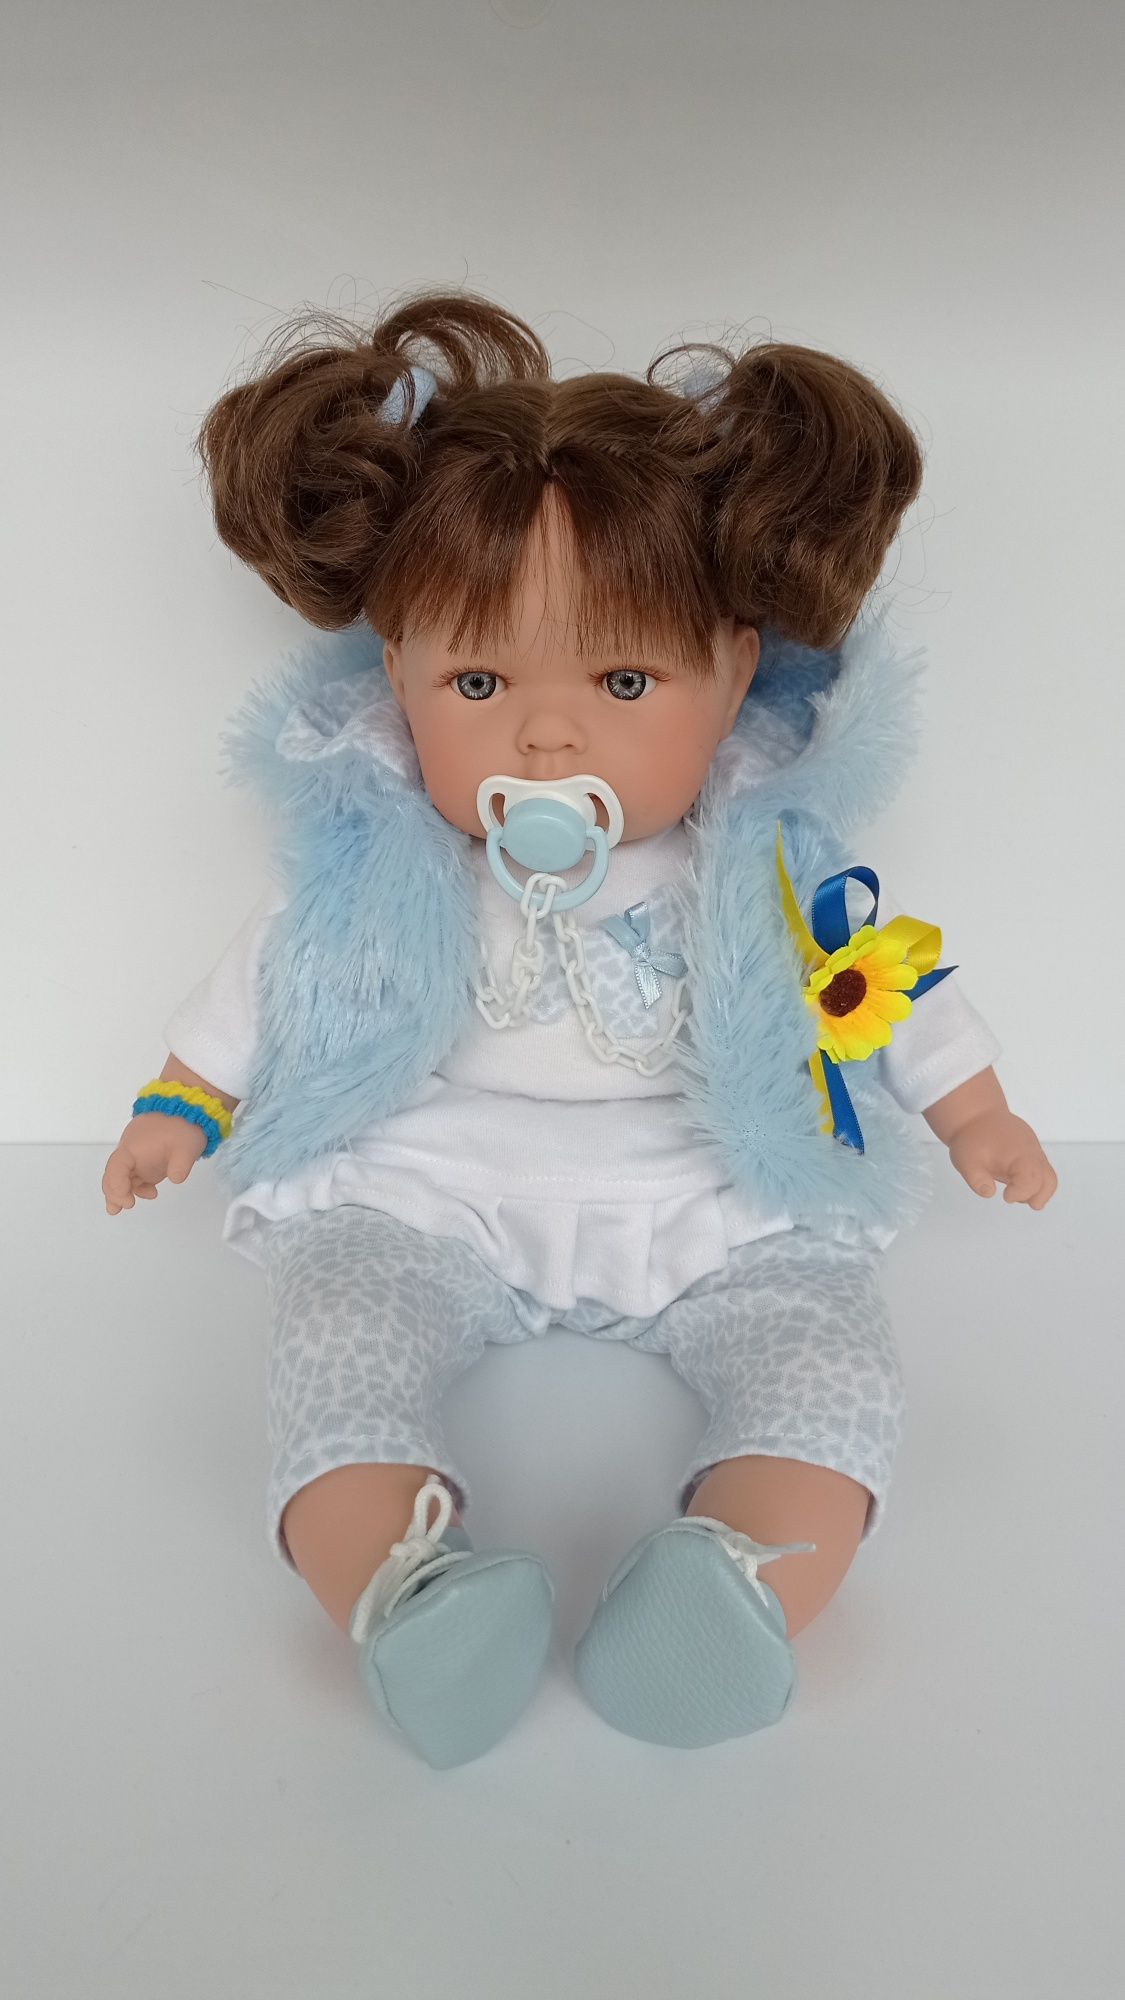 Испанская Кукла Mia Nines d Onil30 см,Іспанська лялька Мія нінес доніл